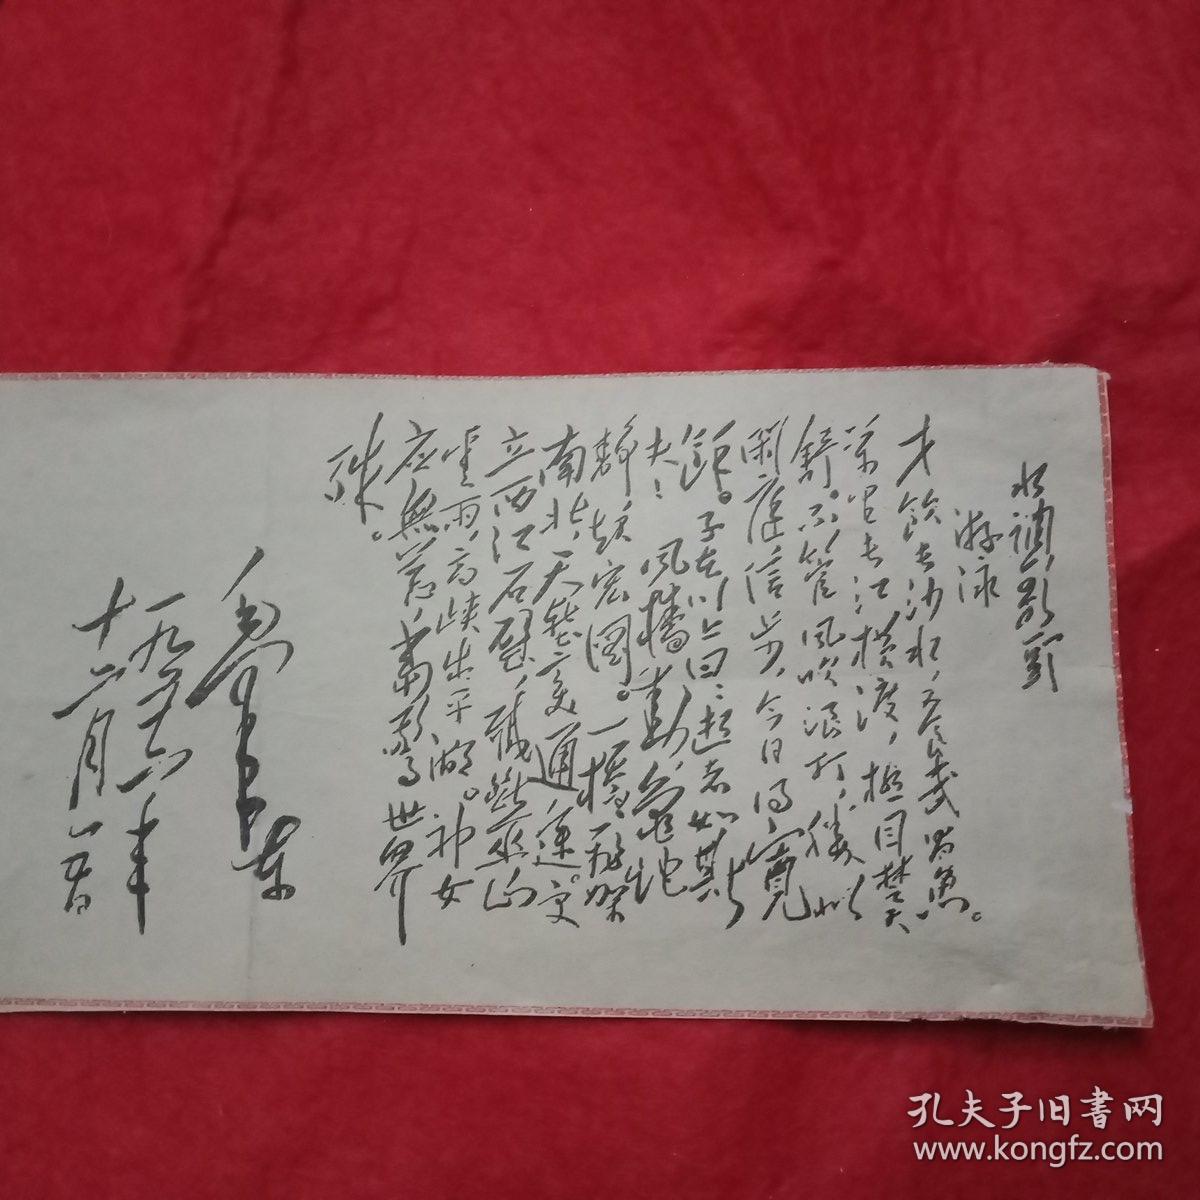 毛泽东书法:毛主席手书自己创作的诗词《水调歌头.游泳》全文（此为剪报，源于1970年版报纸，宽18厘米高9厘米。伟人书法，大气磅礴，独具一格，可用于欣赏、临摹和收藏）